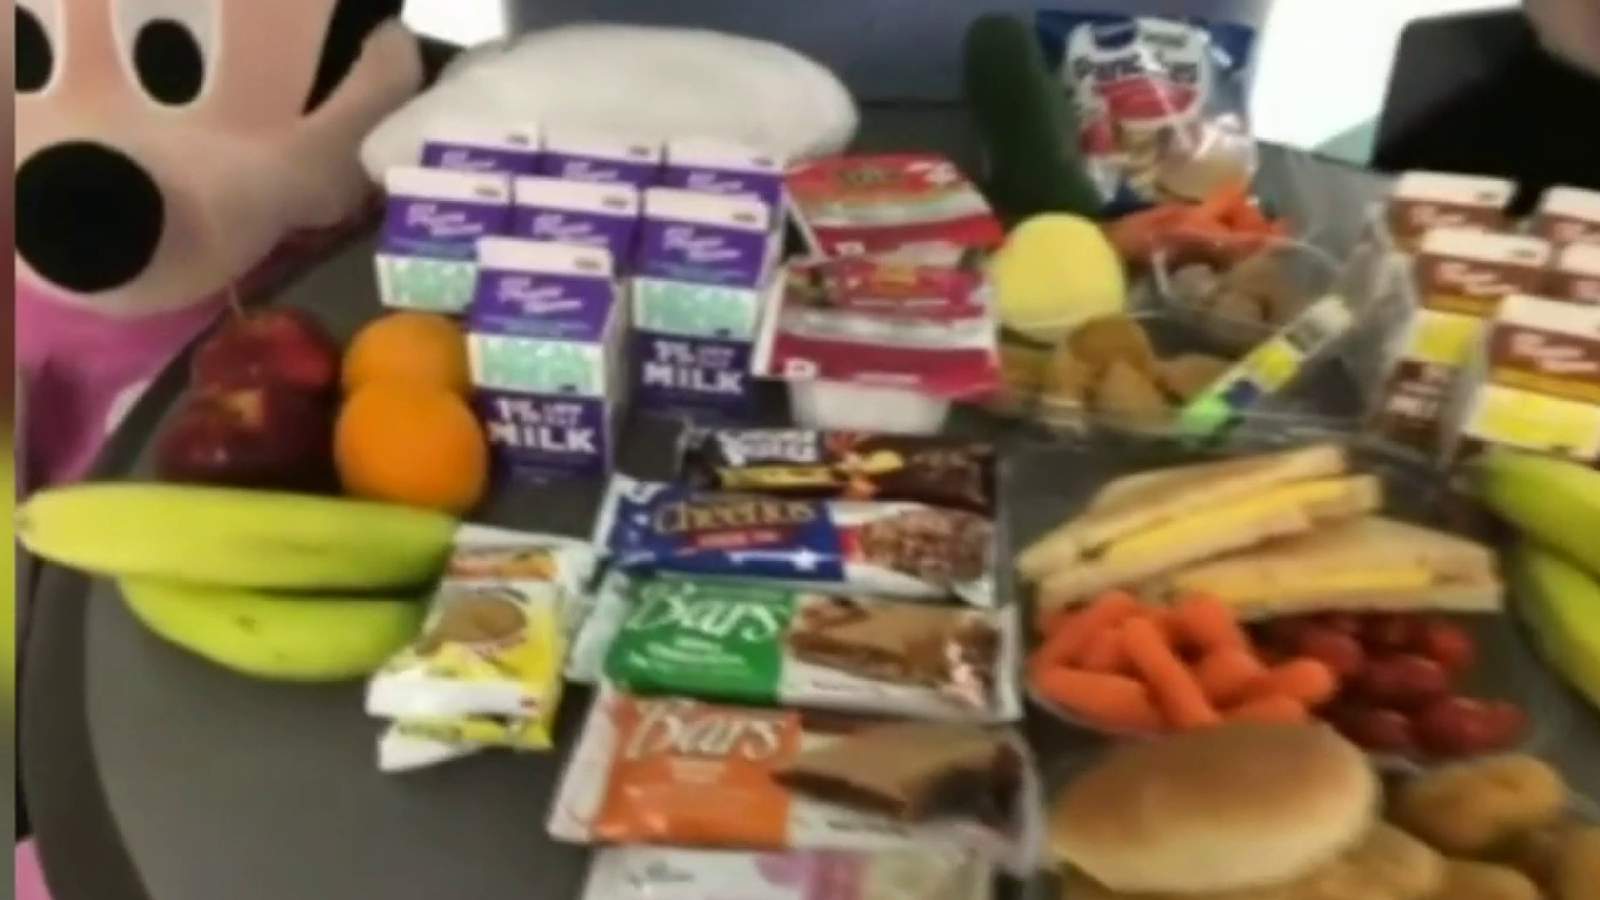 Birmingham schools food program serves more than 100,000 free meals